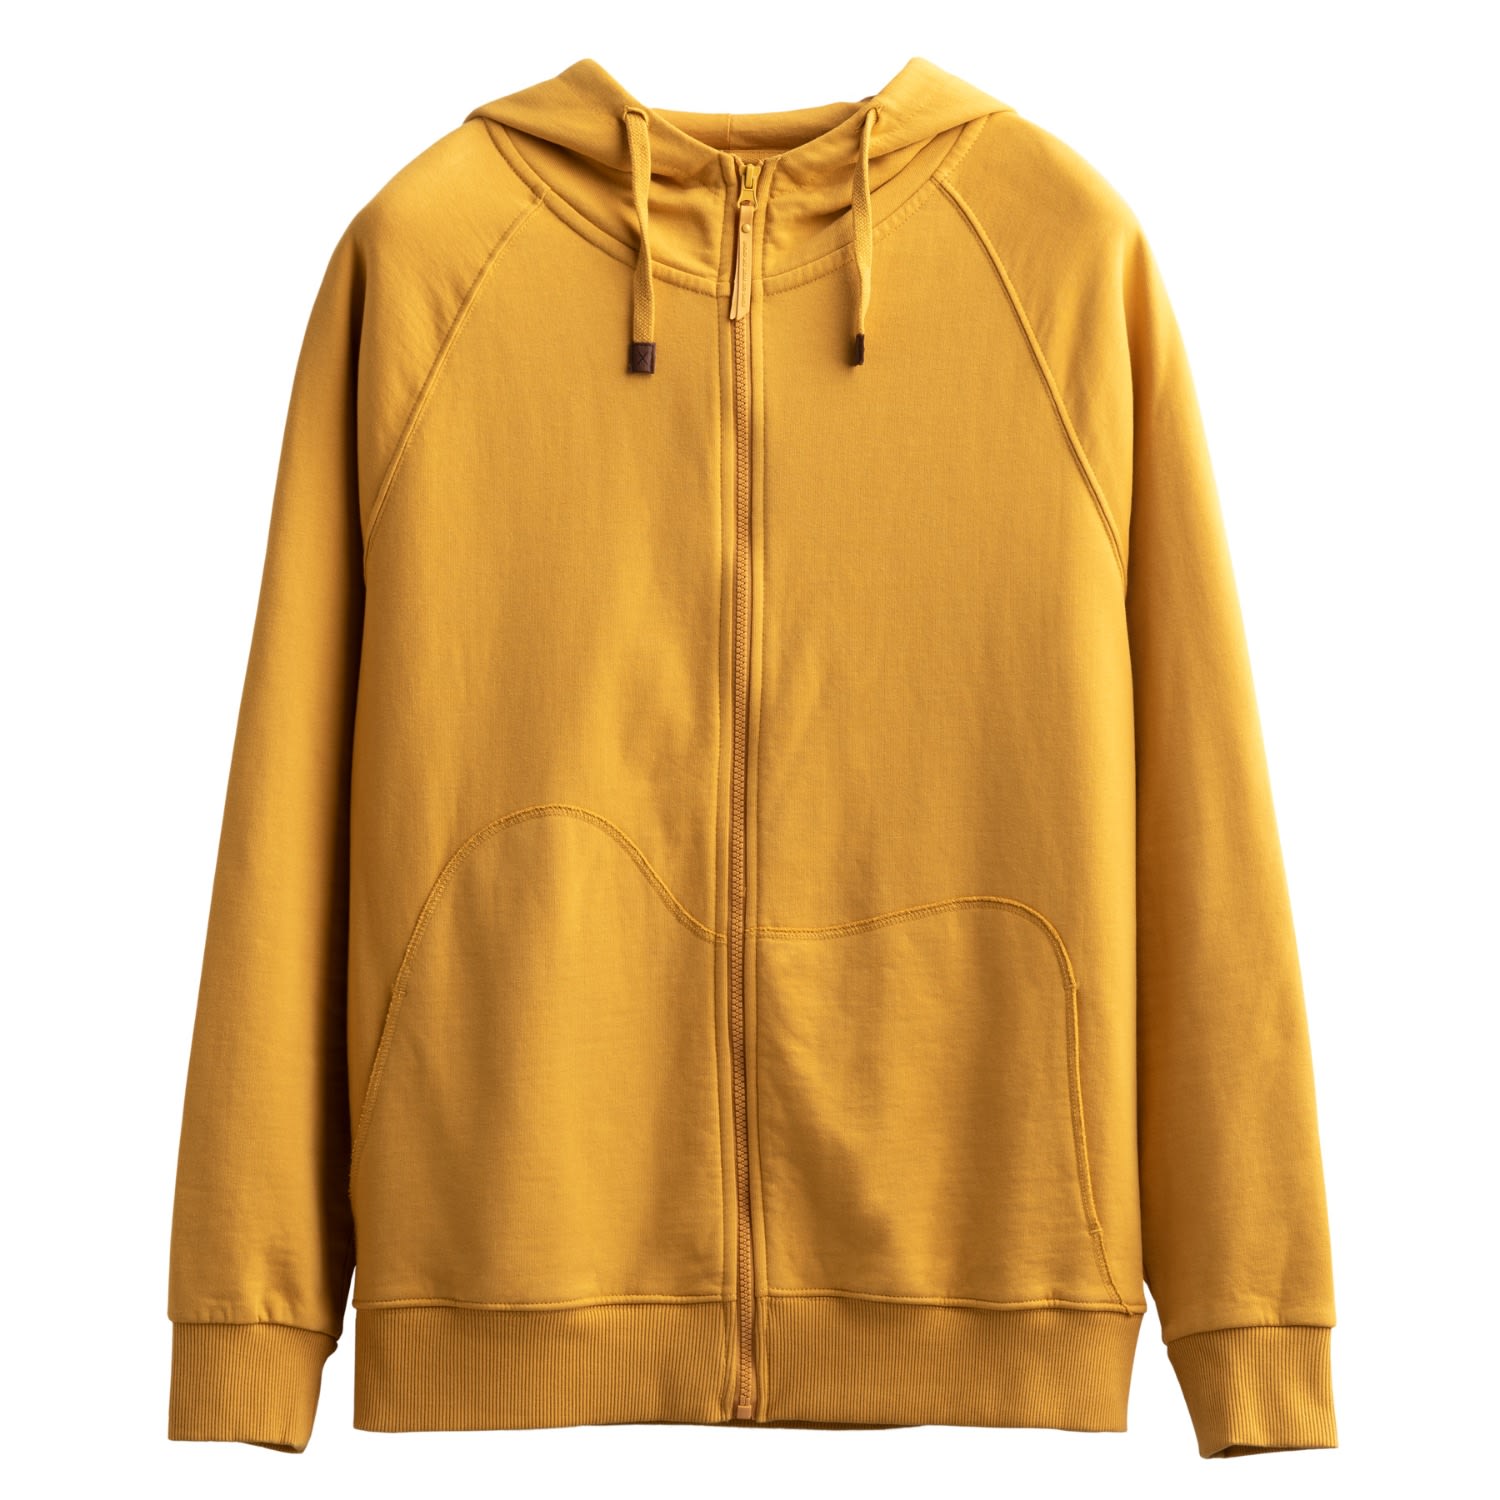 Men's Yellow / Orange Unisex Design Zip Hoodie Sweatshirt - Zipper - Sulphur Small KAFT